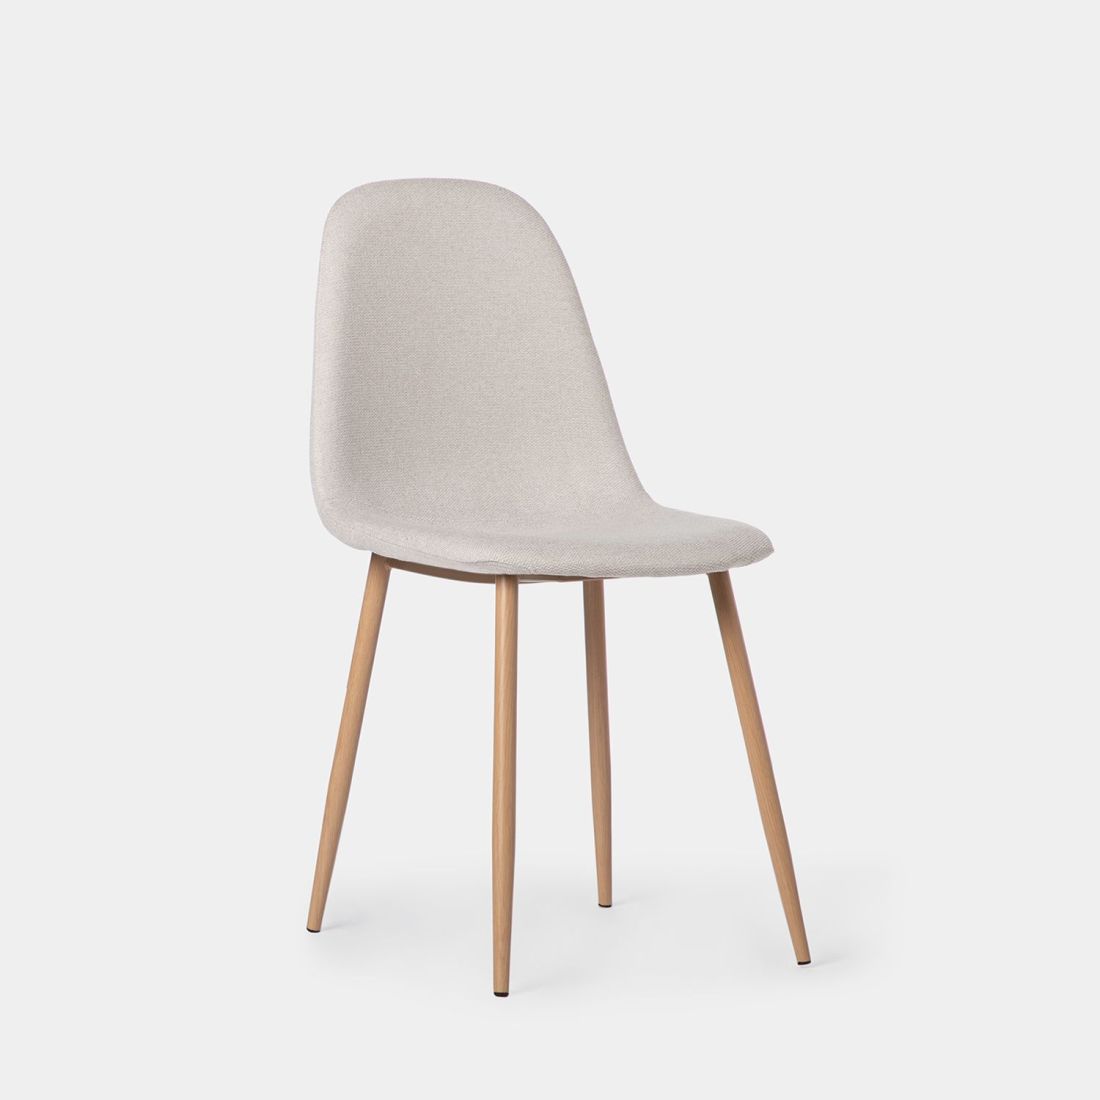 La silla de comedor tapizada Ellis con pata metálica efecto madera se convertirá en la protagonista de tu comedor gracias a su exclusivo y elegante diseño. Disfruta de esta polivalente silla de diseño ergonómico en donde más la necesites